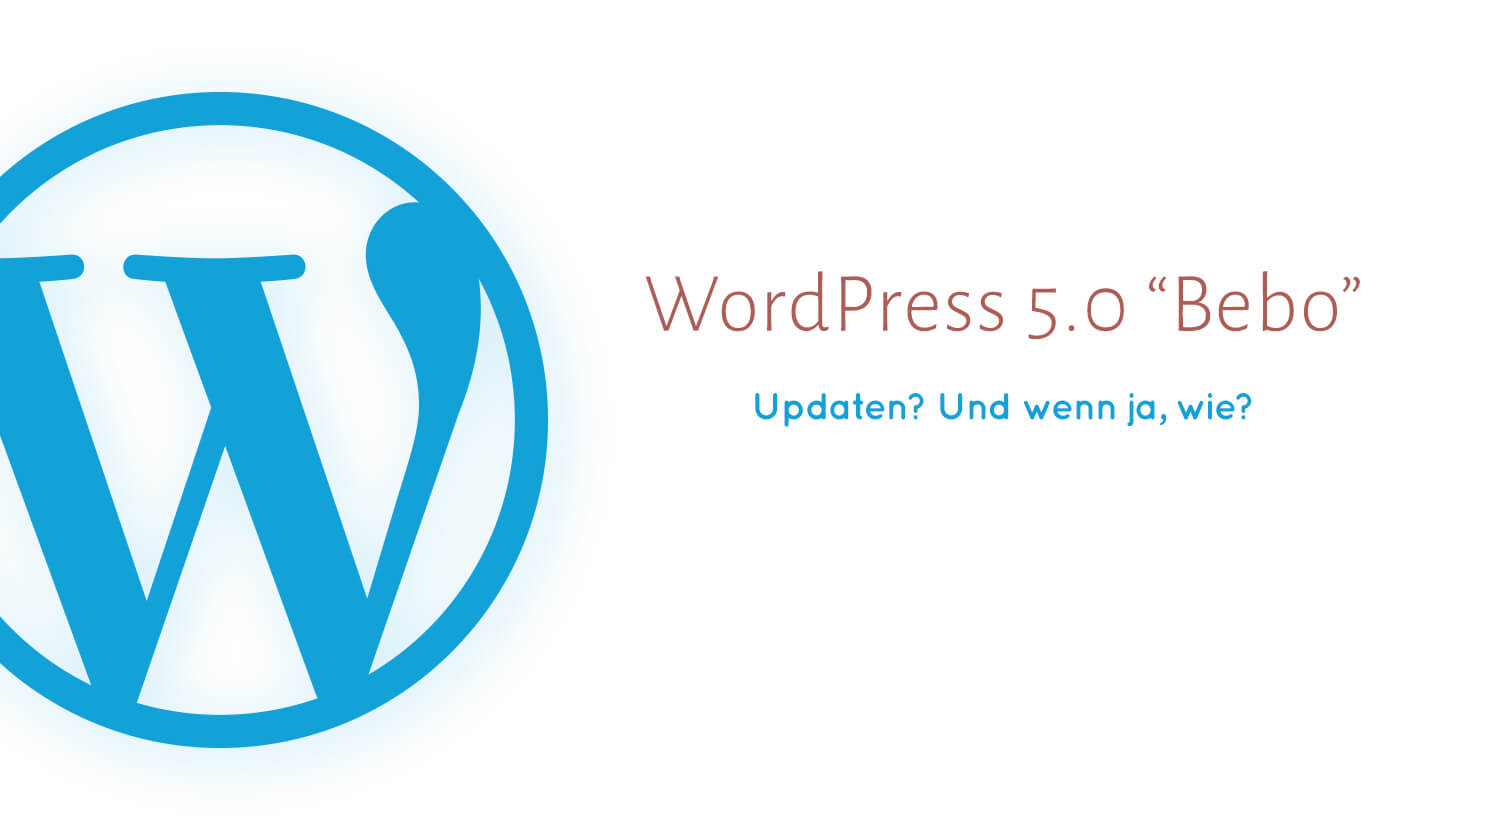 Beitragsbild für die News von BlueBox Design zum Update von WordPress 5.0.